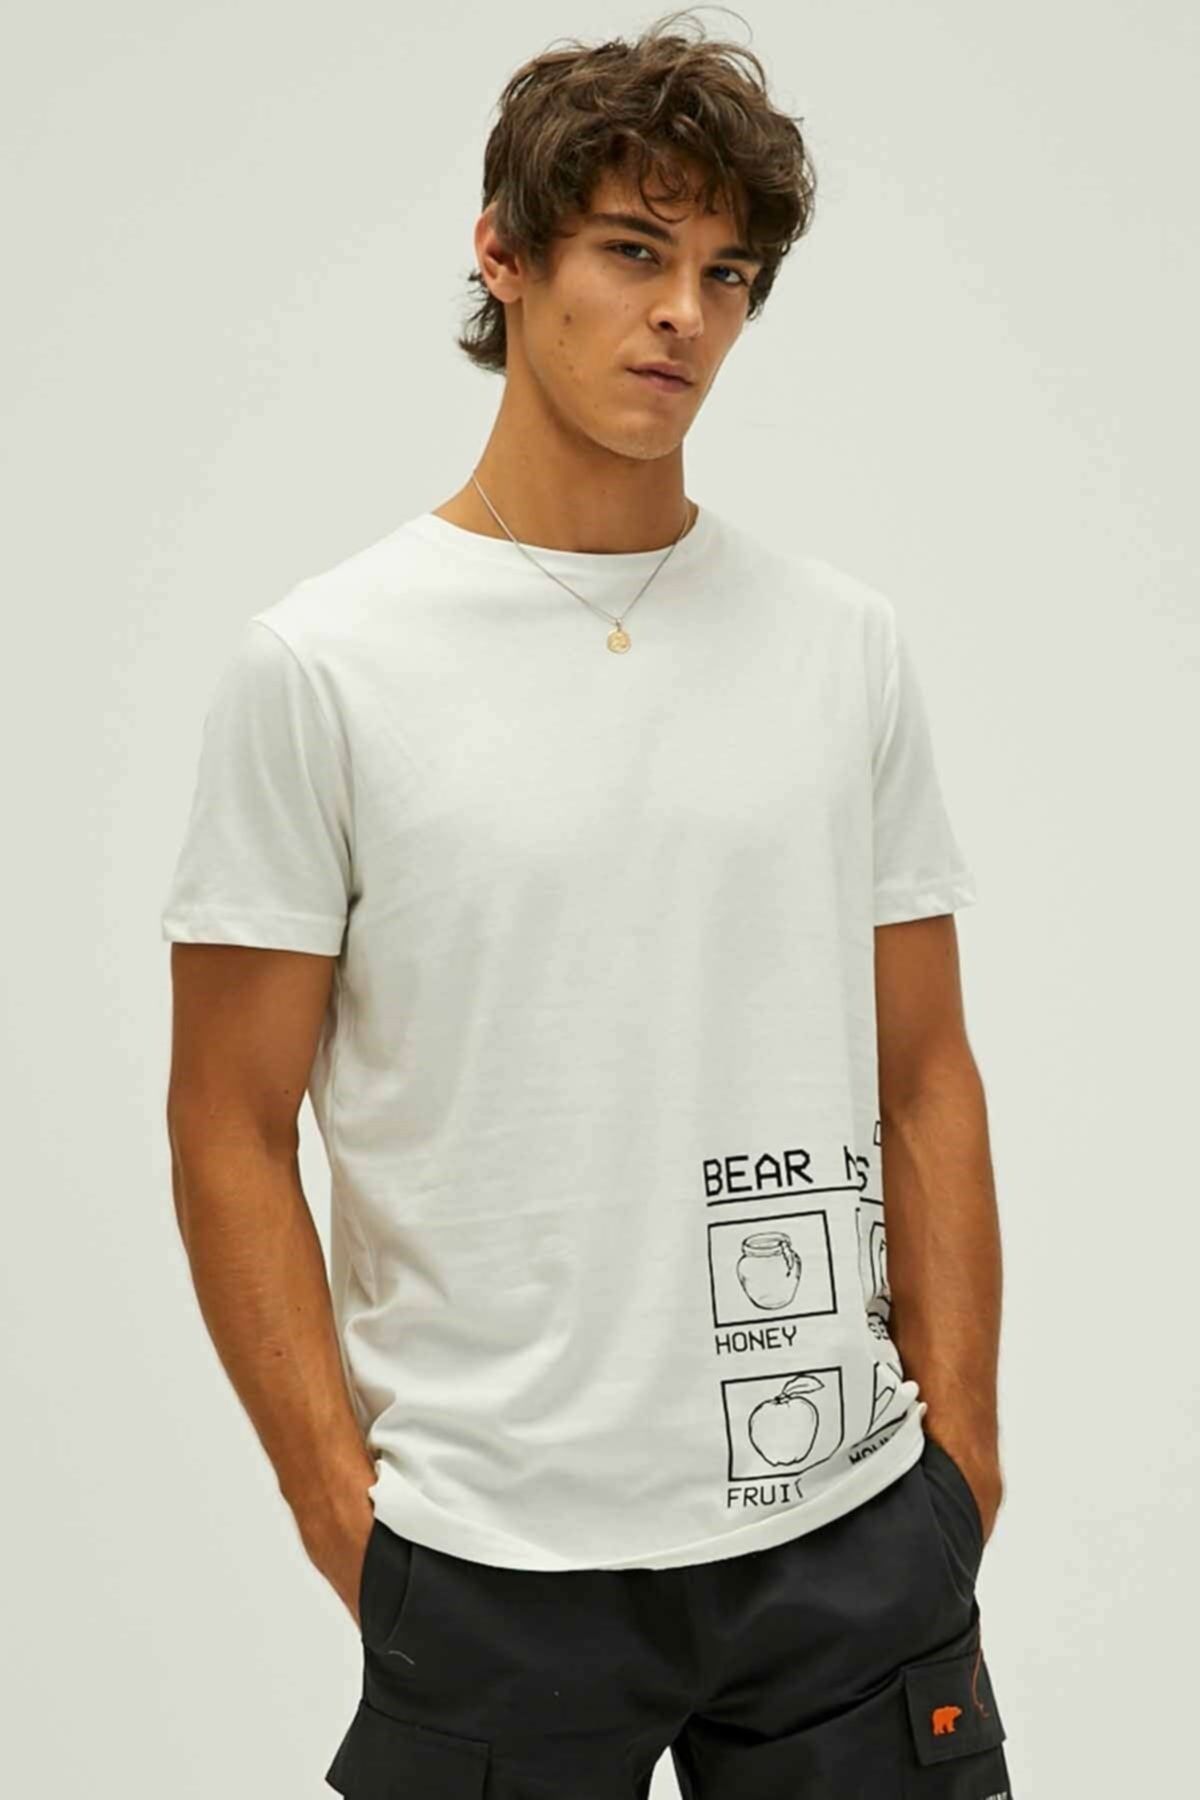 Bad Bear Bear Needs T-shirt Erkek Tişört 22.01.07.016off-white